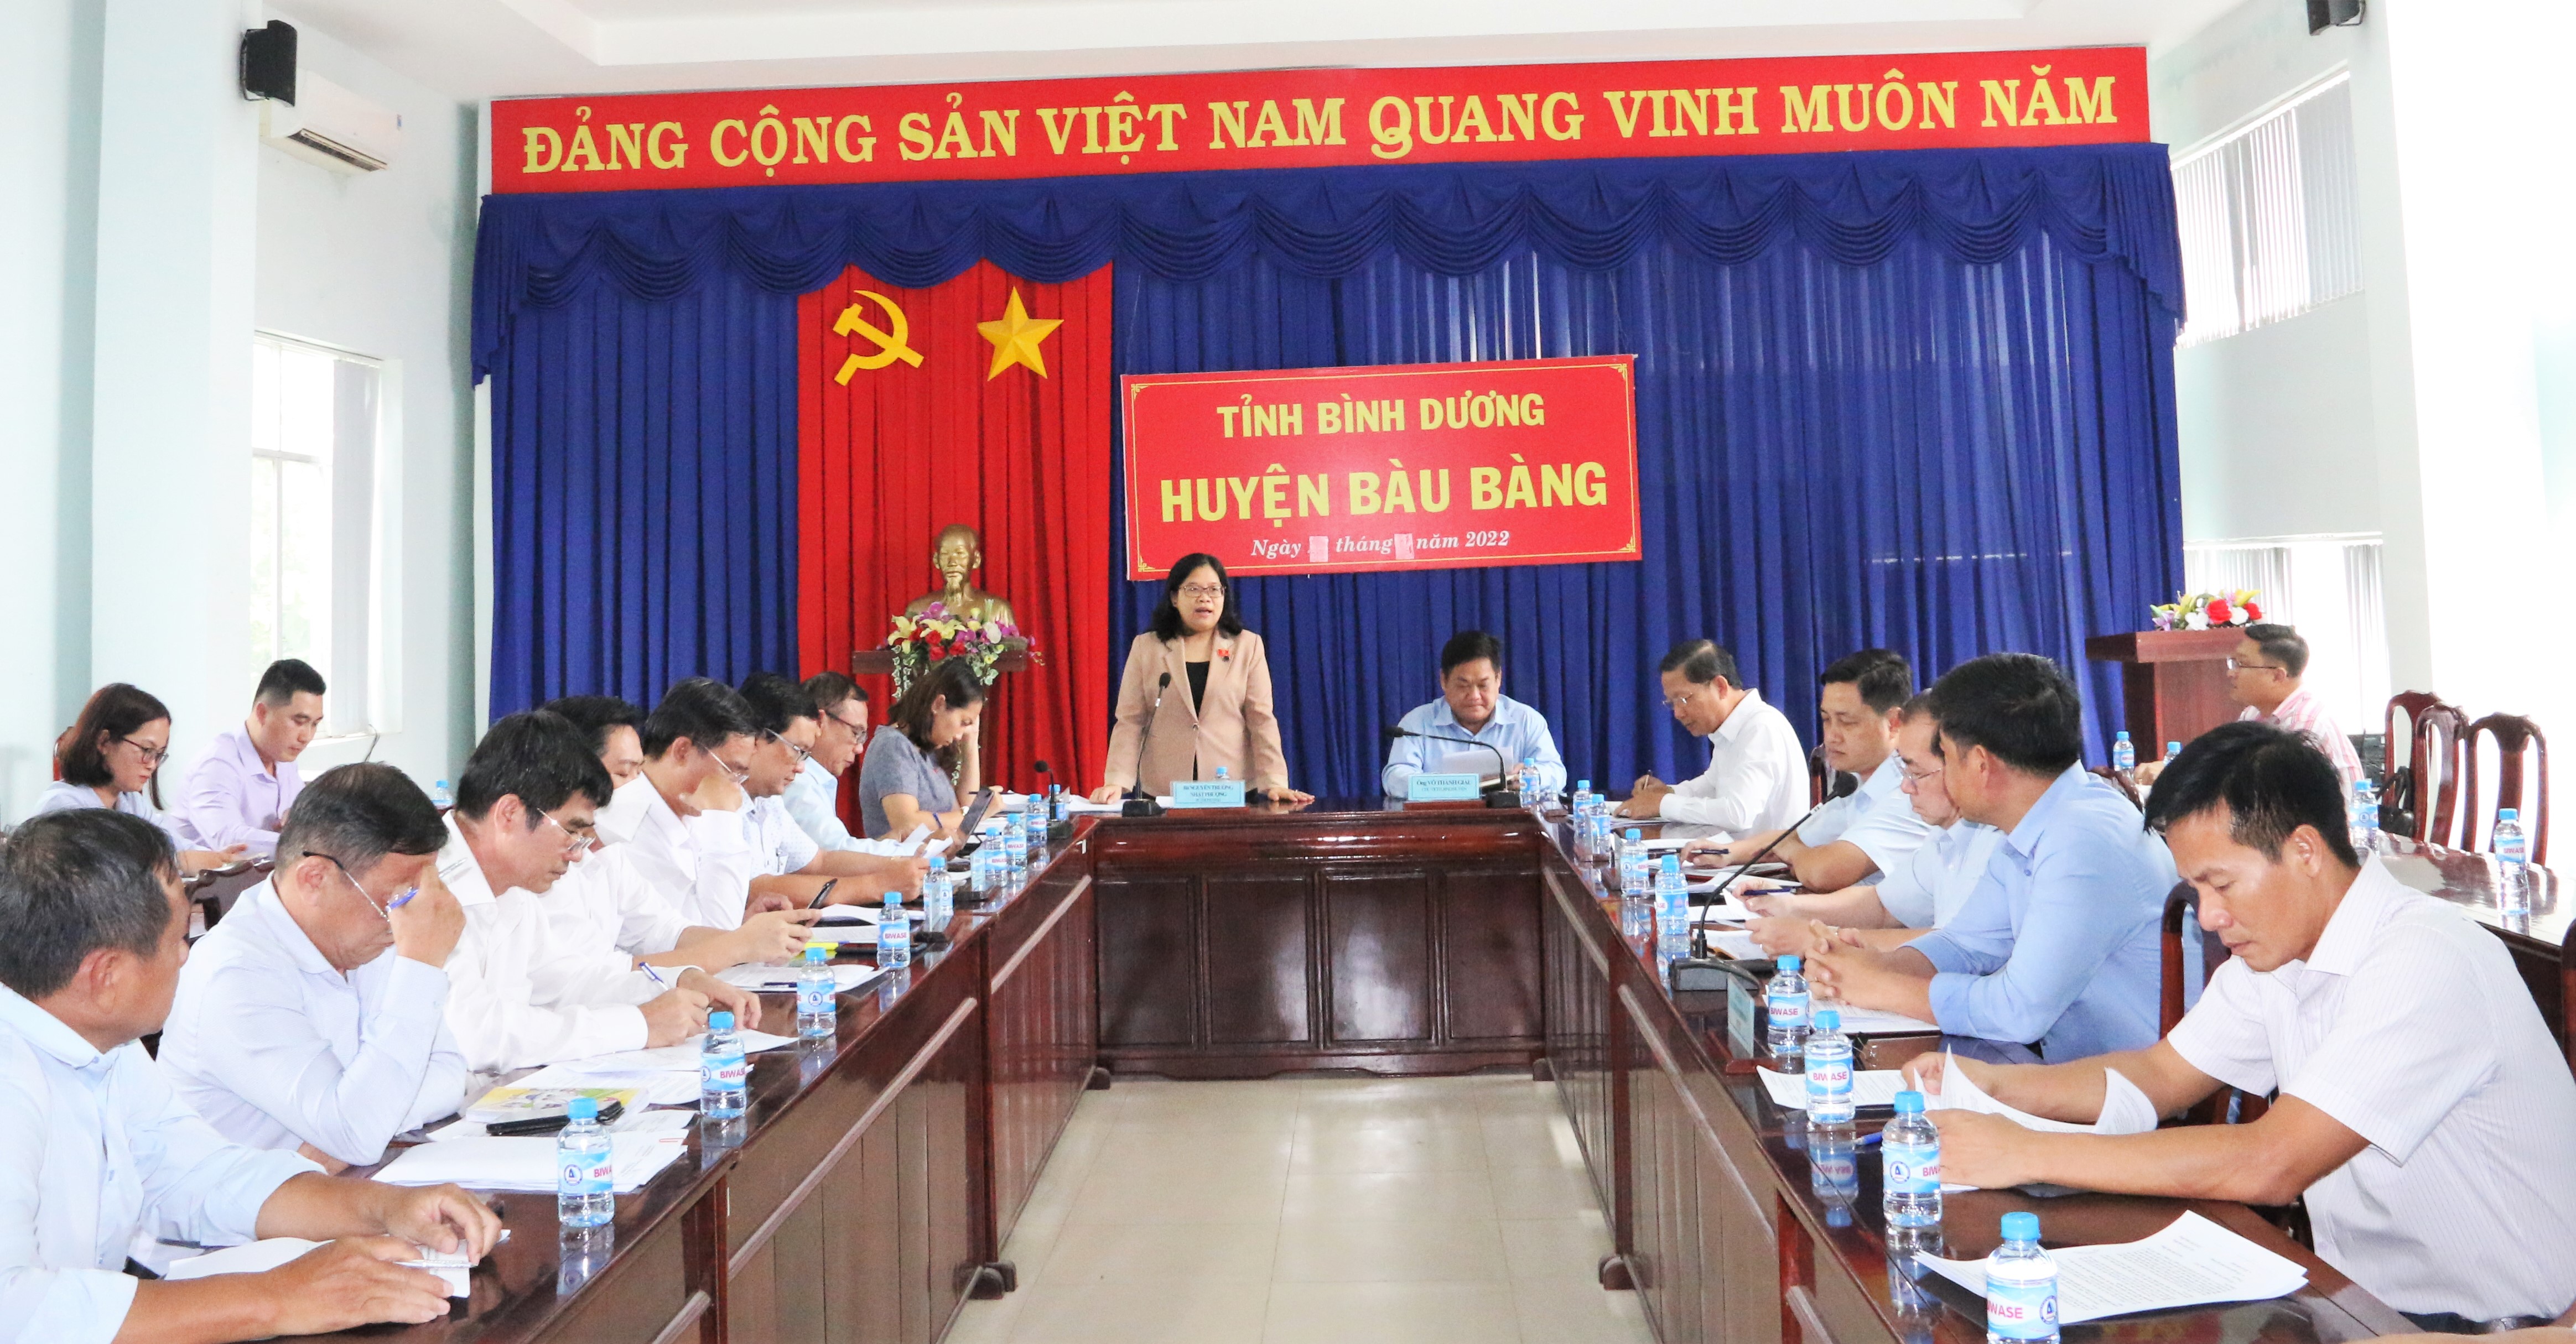 Đoàn giám sát HĐND tỉnh kiểm tra công tác đầu tư công năm 2022 tại huyện Bàu Bàng